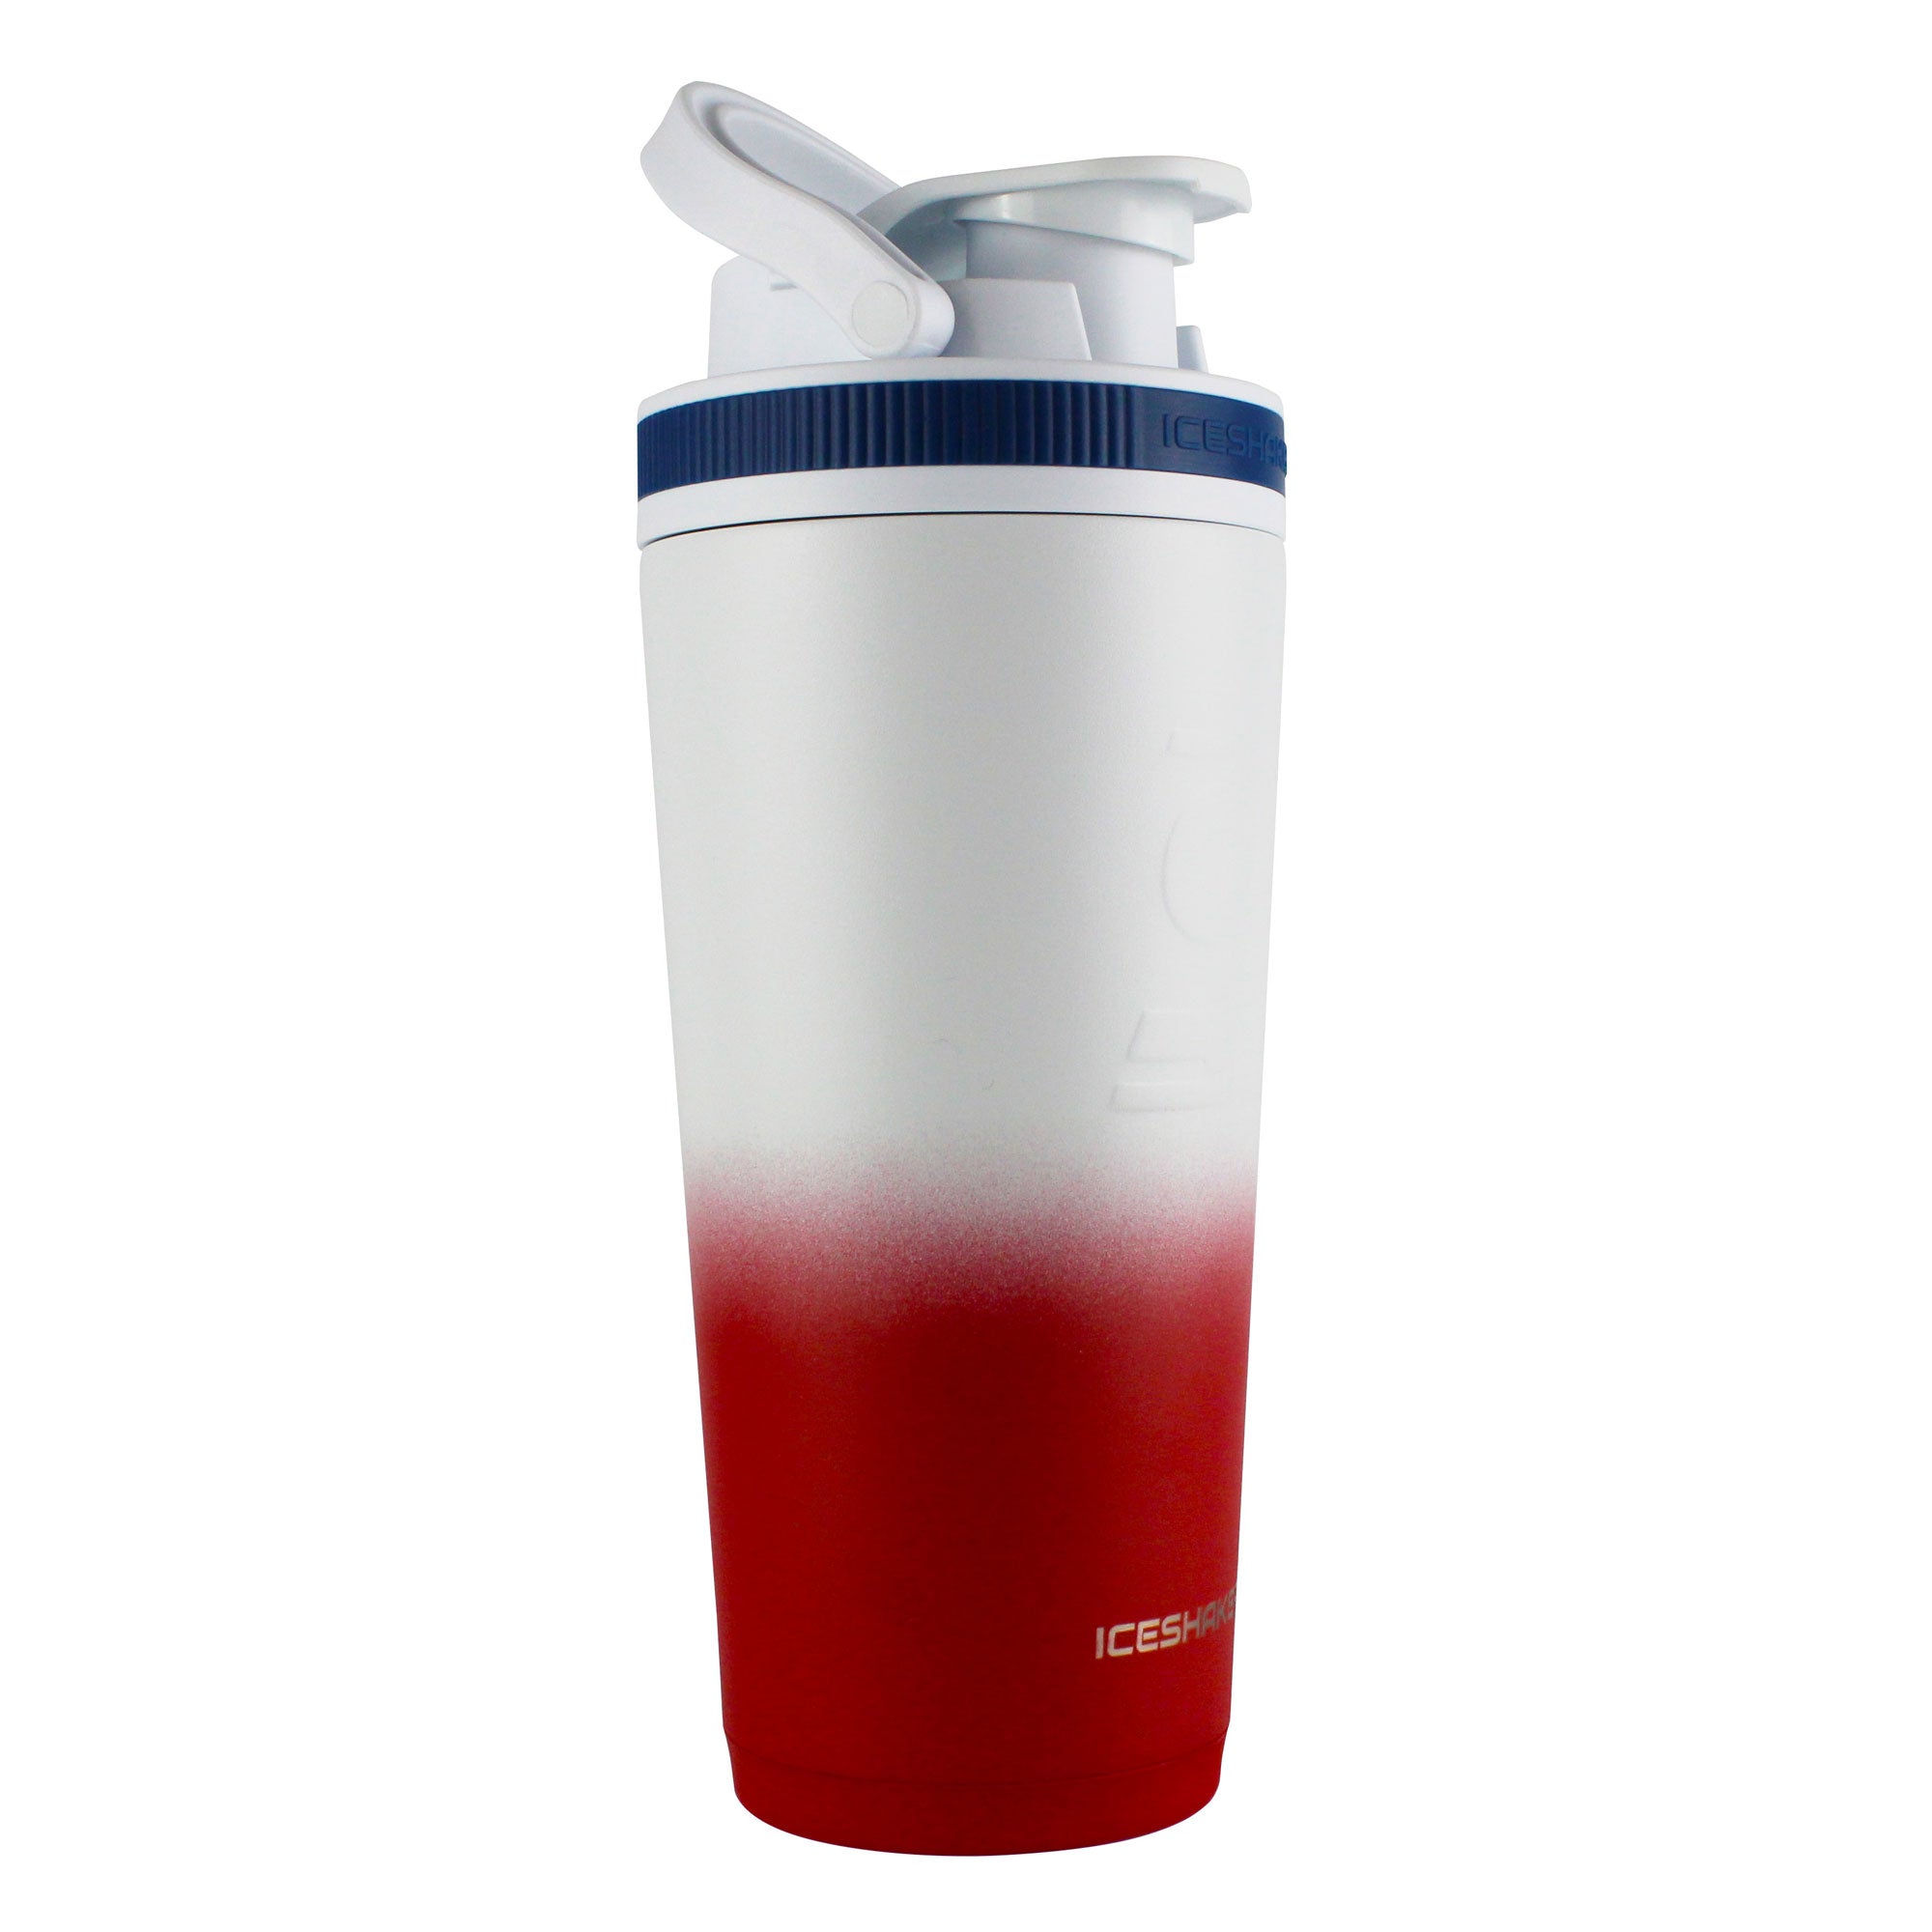 NEW, 36oz Ice Shaker Bottle